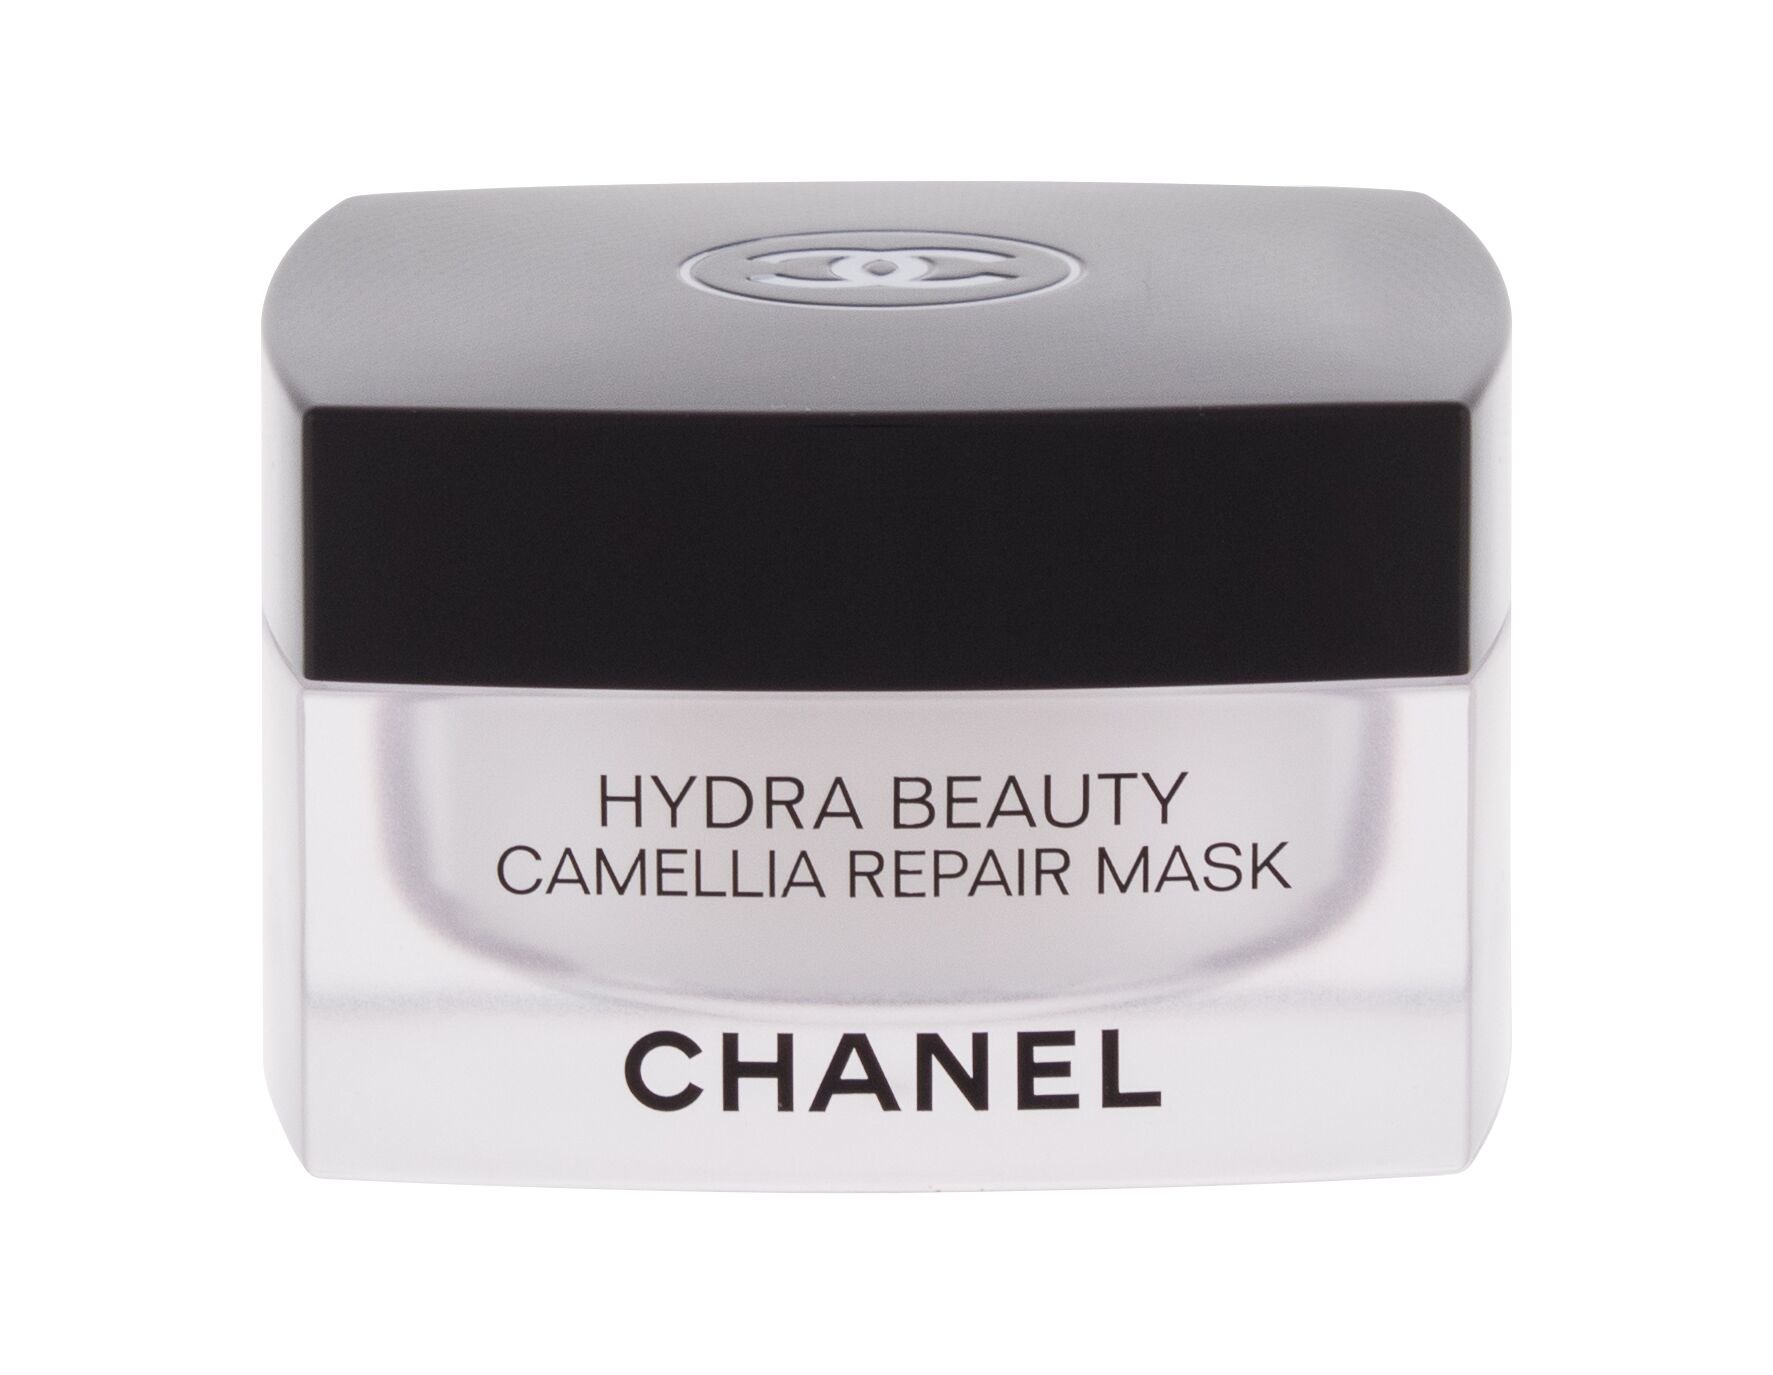 Chanel Hydra Beauty Camellia Veido kaukė